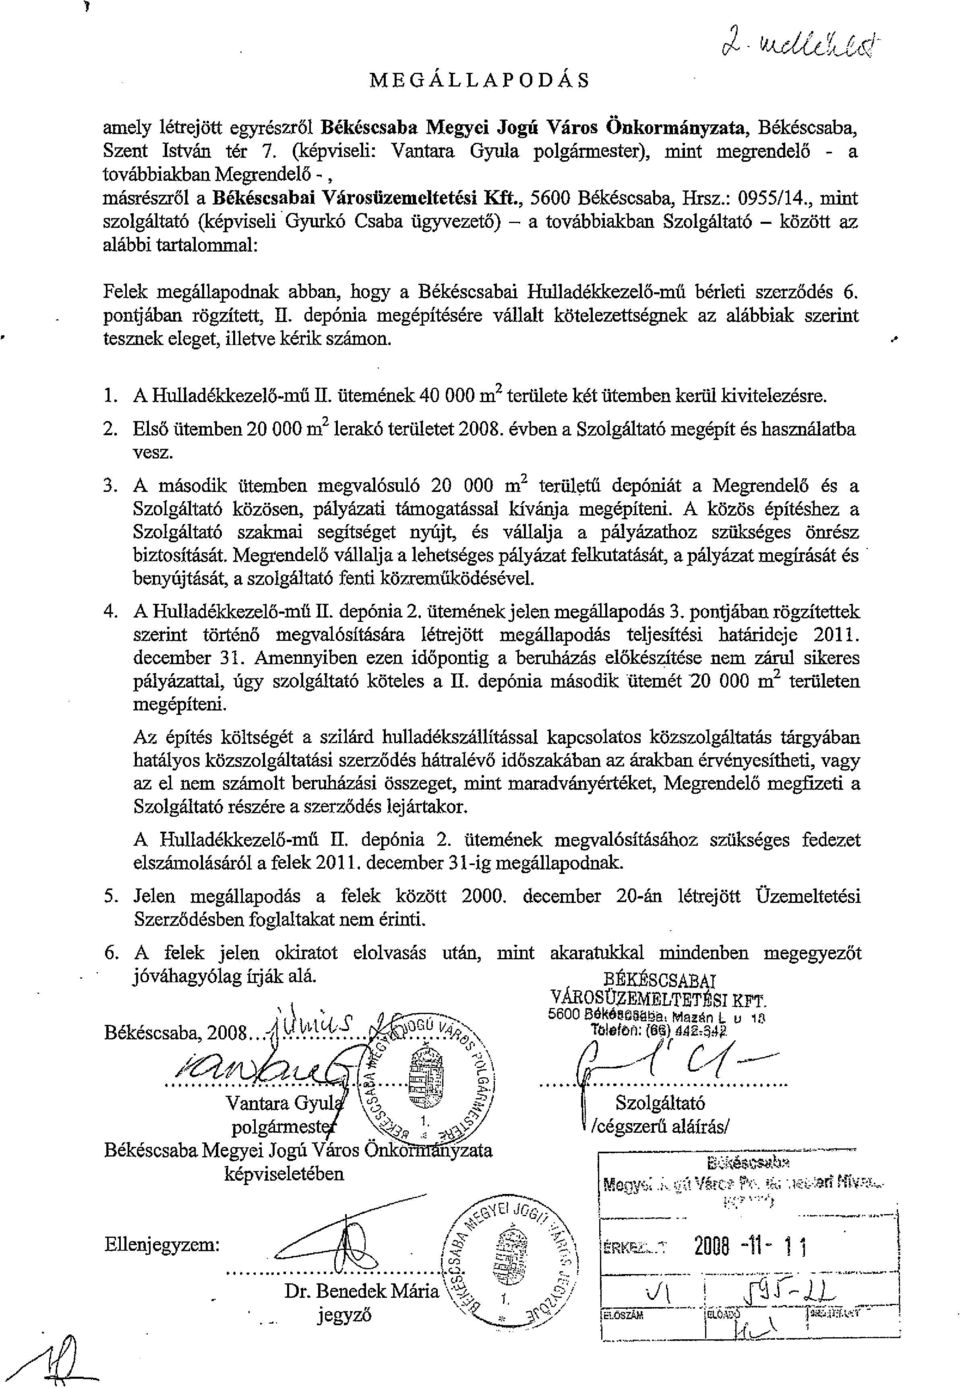 , mint szolgáltató (képviseli' Gyurkó Csaba ügyvezető) - a továbbiakban Szolgáltató - között az alábbi tartalommal: Felek megállapodnak abban, hogy a Békéscsabai Hulladékkezelő-mű bérleti szerződés 6.